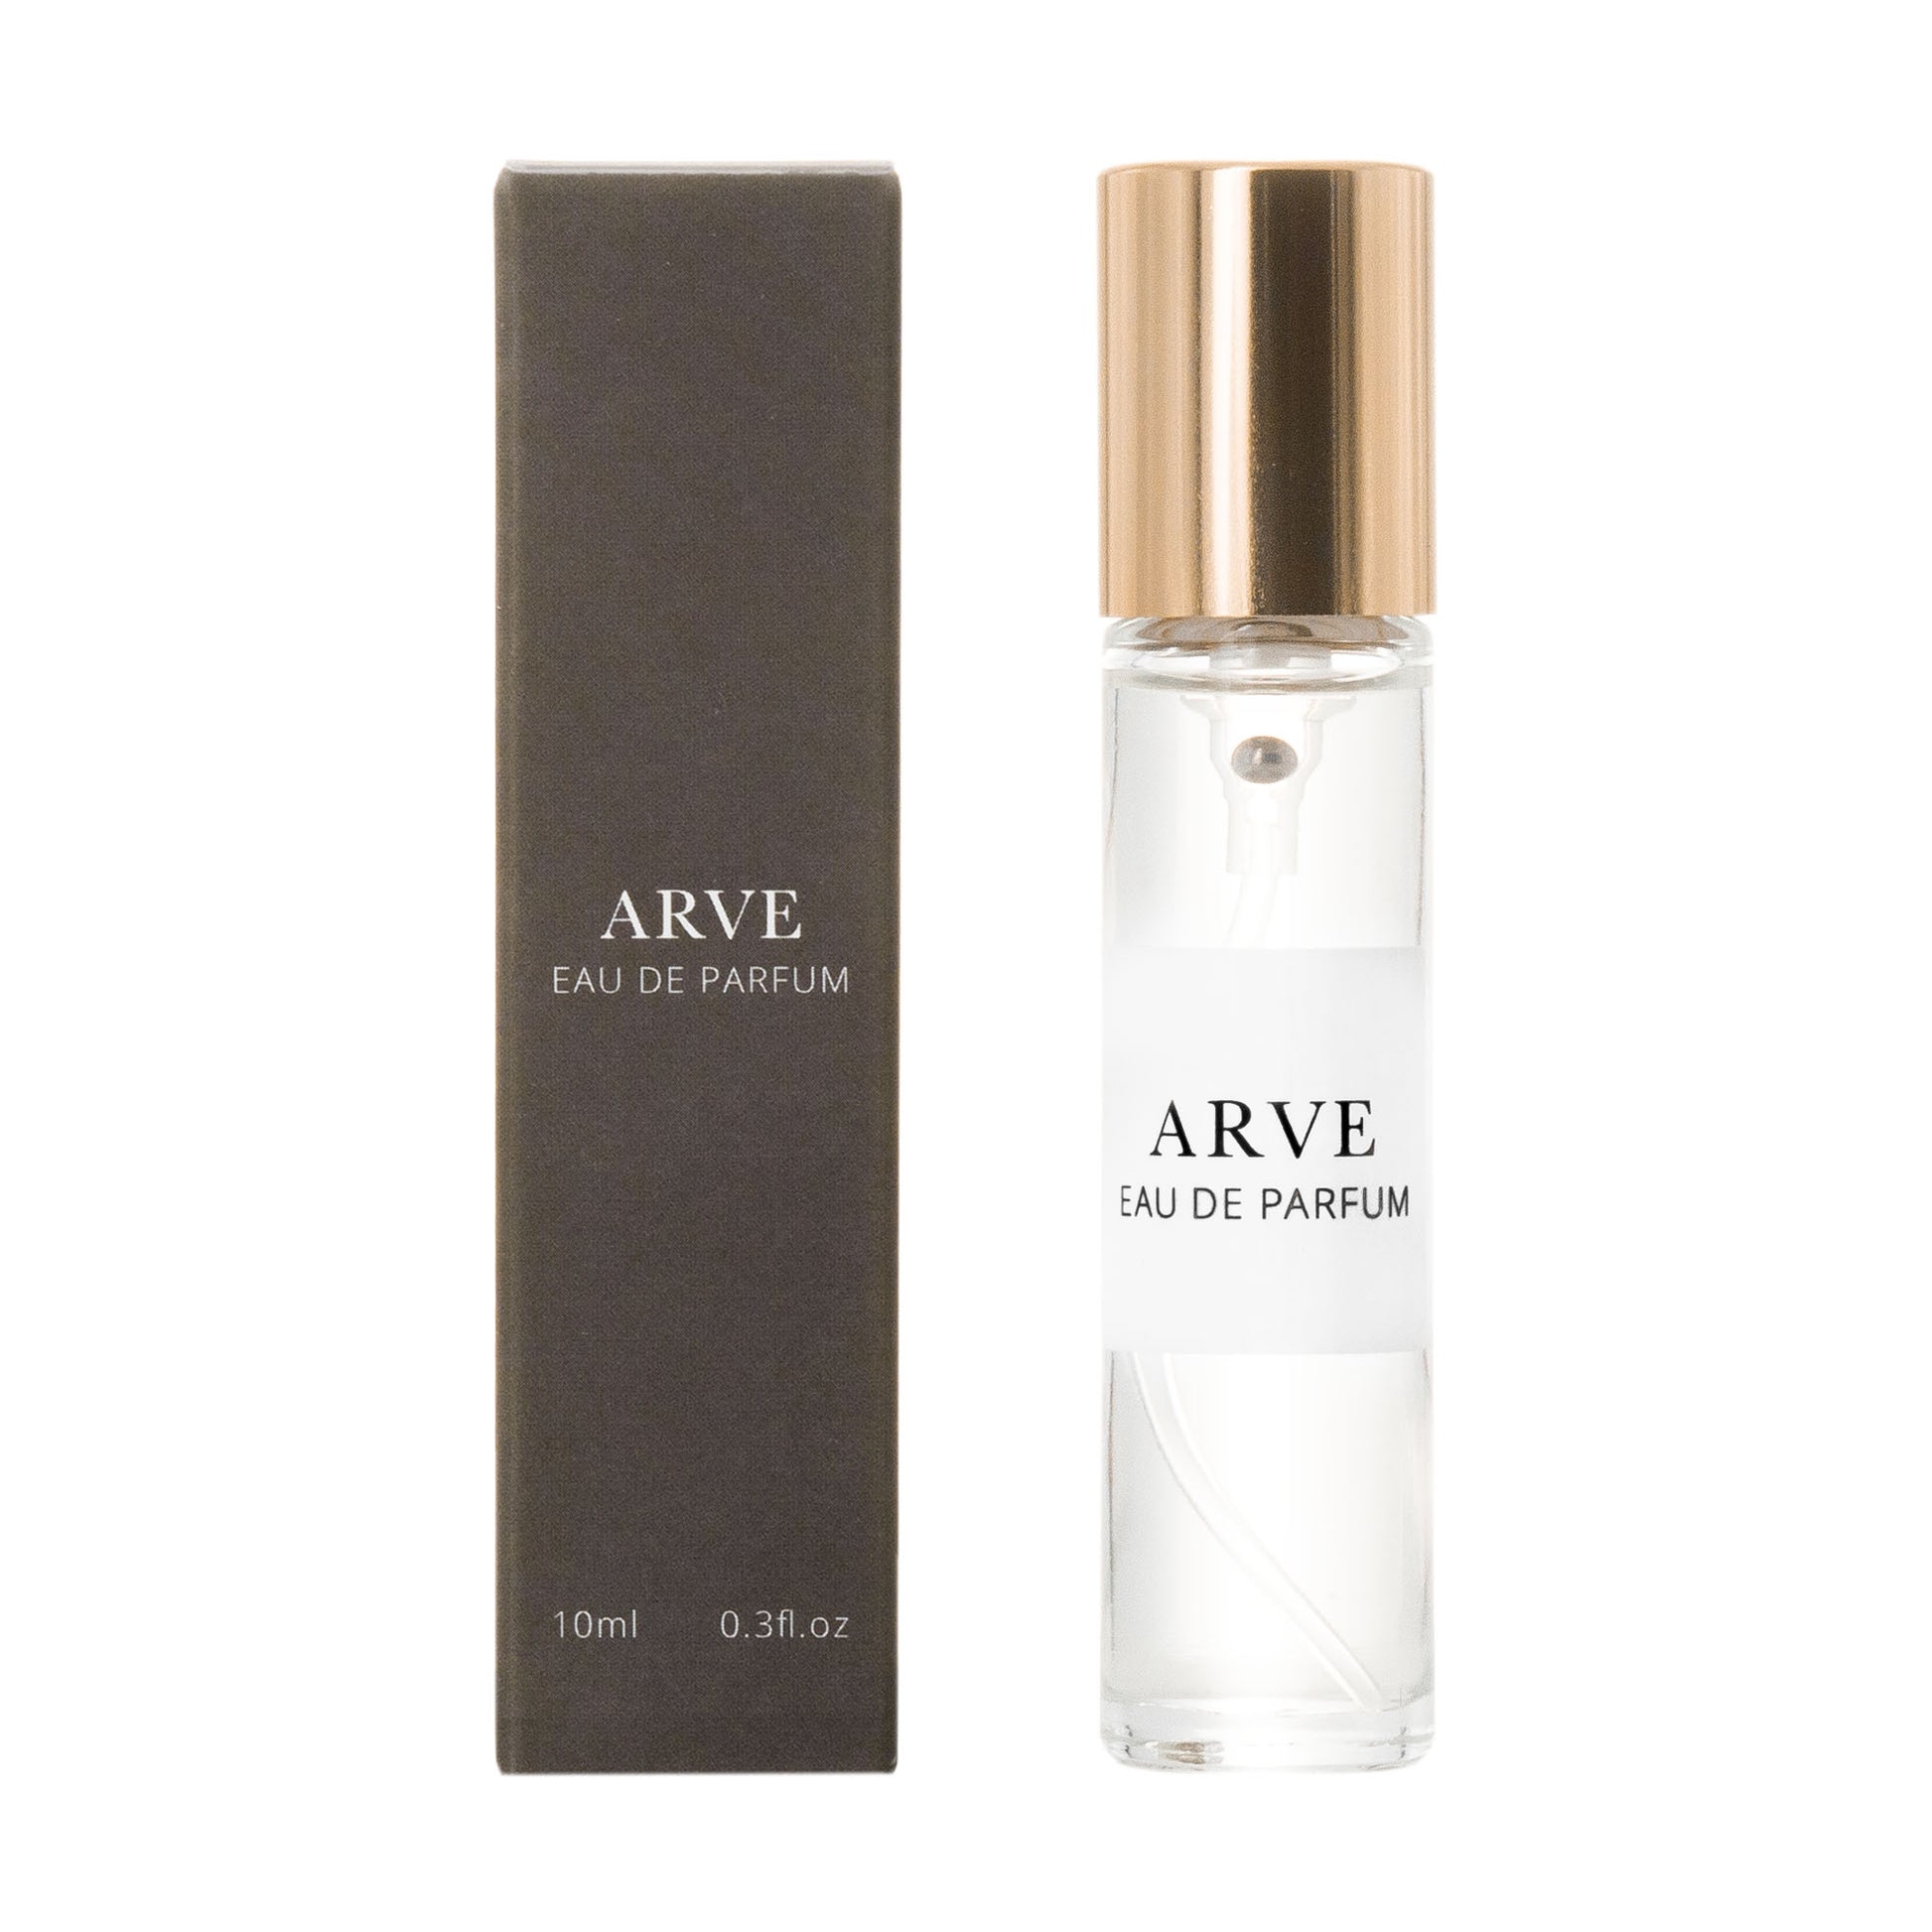 ARVE - Eau de Parfum - The Austrian